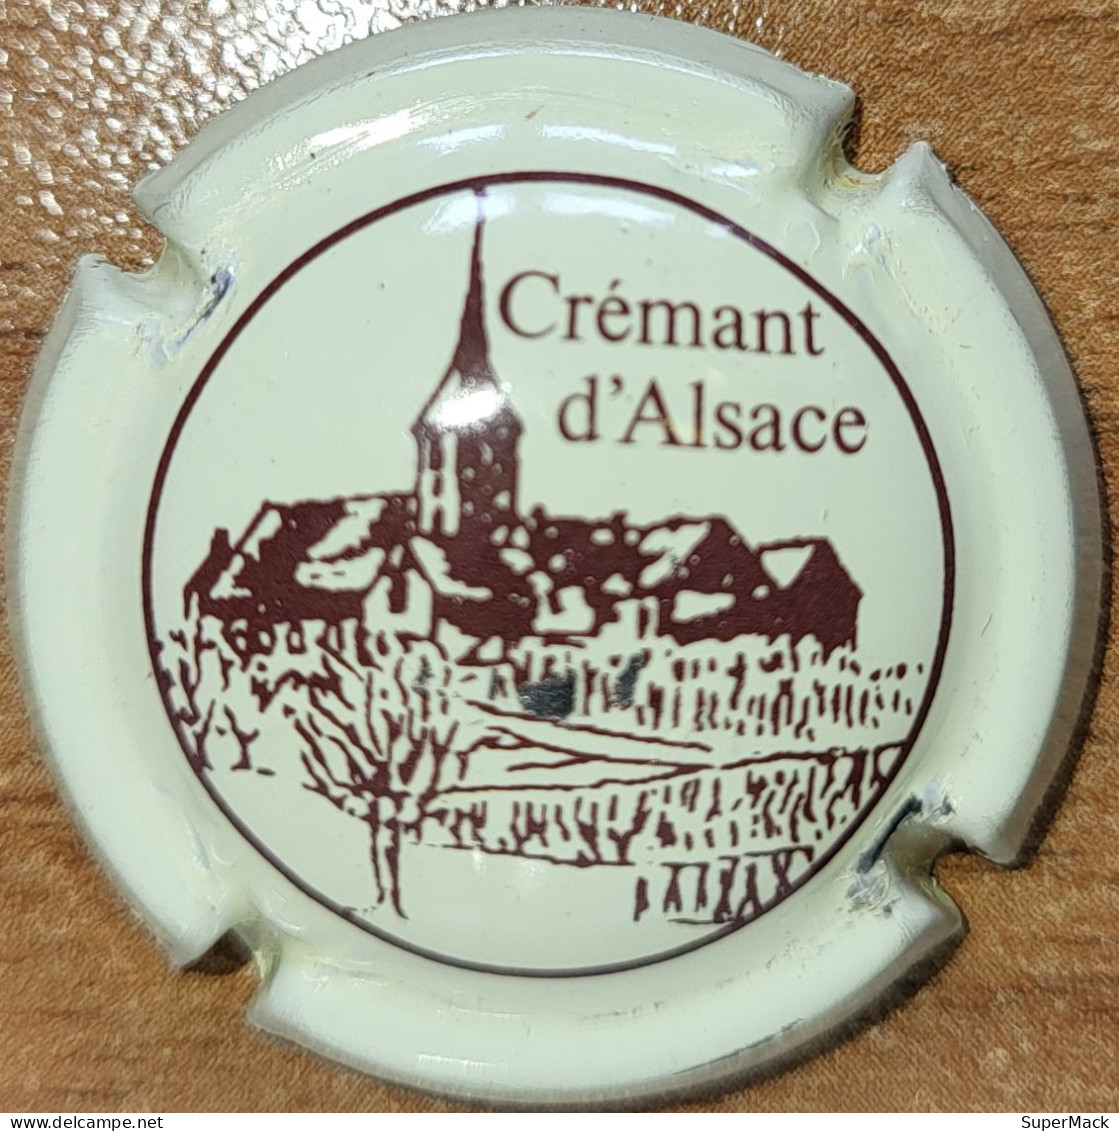 Capsule Crémant Alsace De VIGNERONS Série Clocher, Lettres épaisses, 't' Au Dessus Du 'c', Crème & Brun Nr 51 - Schaumwein - Sekt